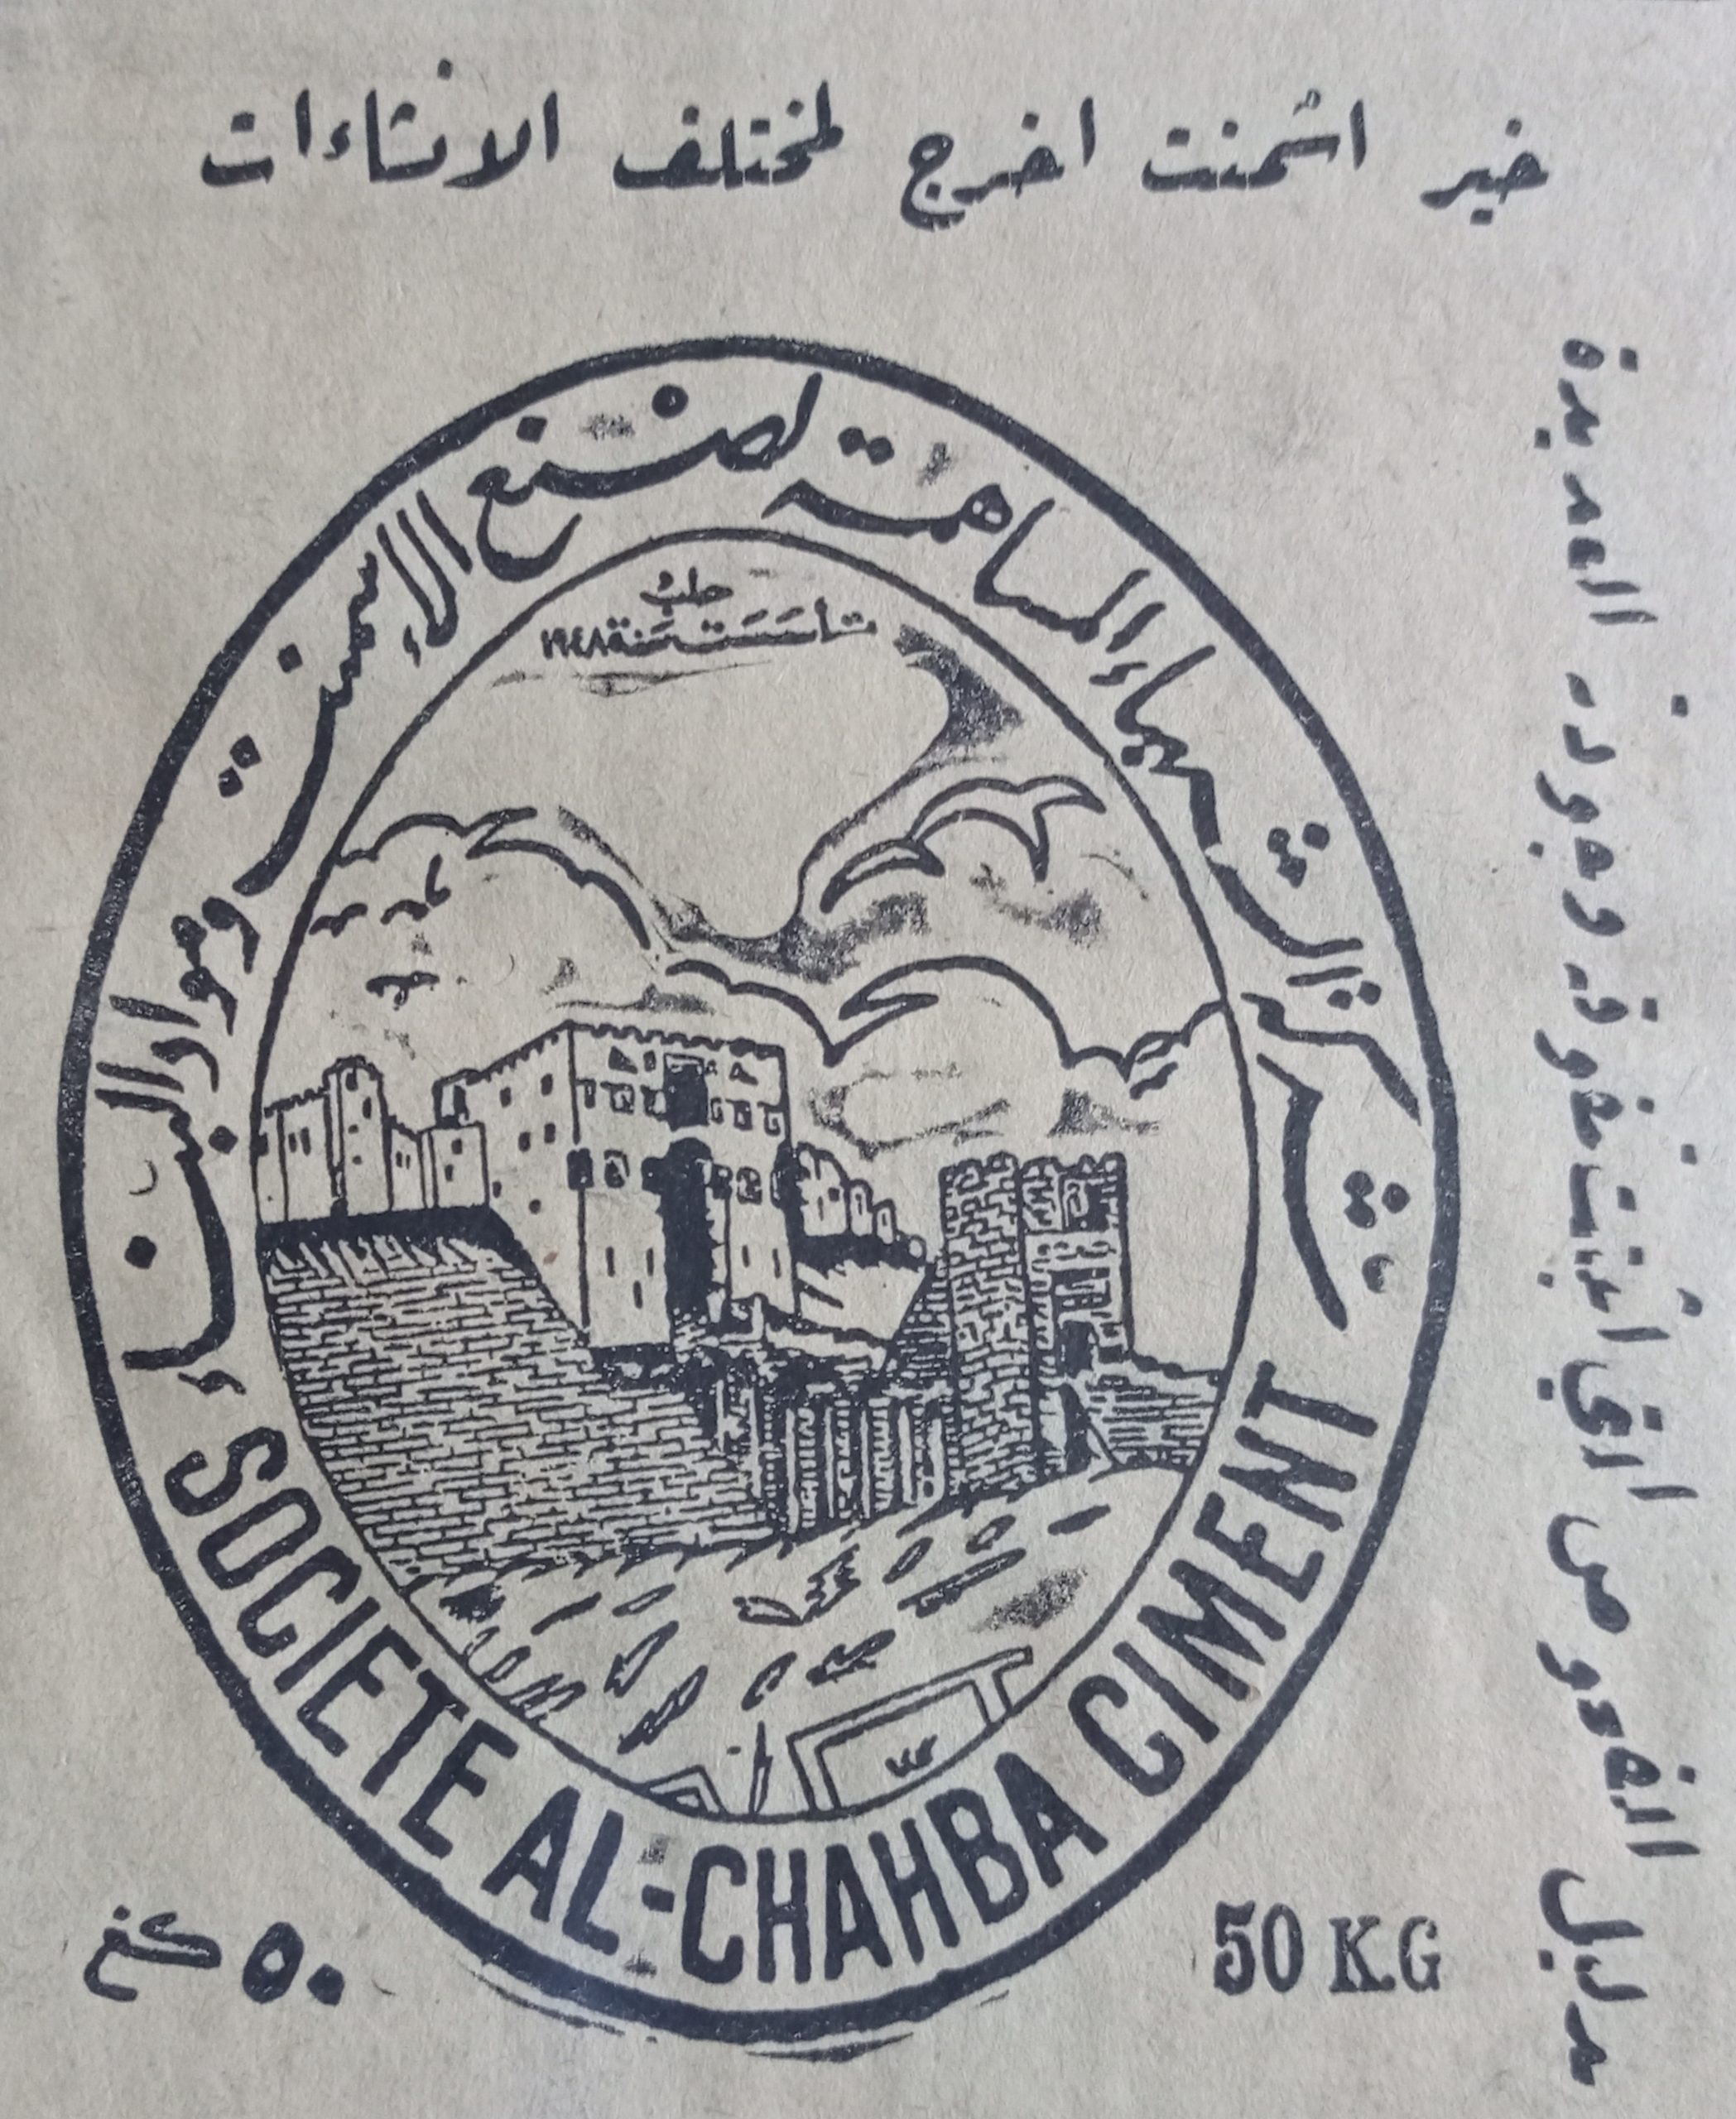 التاريخ السوري المعاصر - إعلان شركة الشهباء المساهمة لصنع الاسمنت و مواد البناء في حلب عام 1956